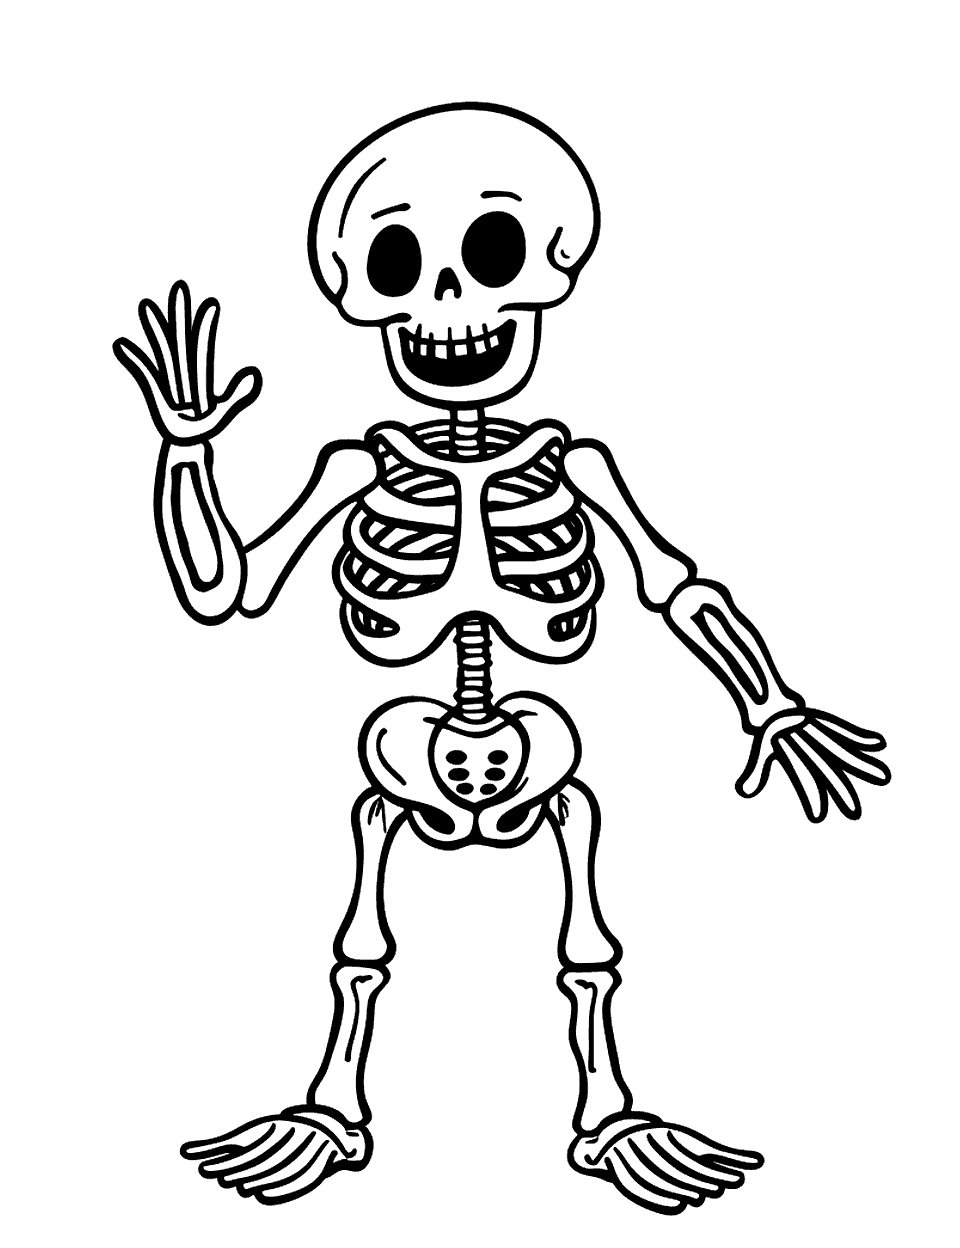 Simple Happy Skeleton Coloring Page - A simple, happy skeleton waving hello.